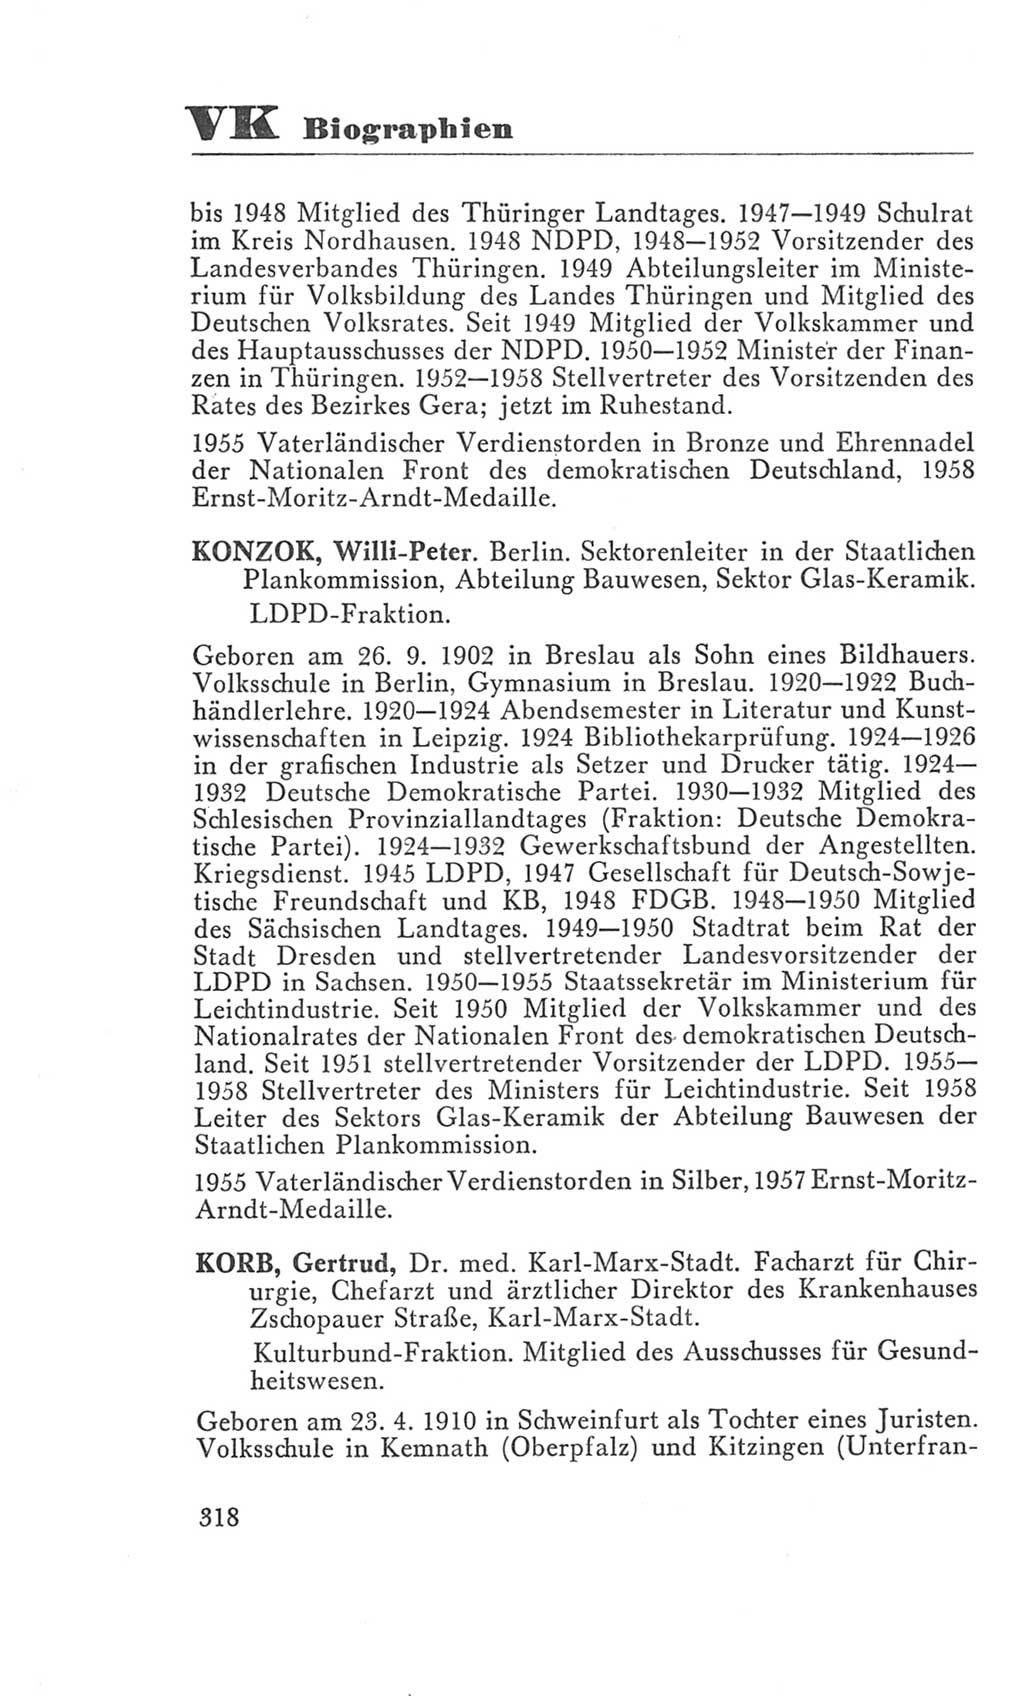 Handbuch der Volkskammer (VK) der Deutschen Demokratischen Republik (DDR), 3. Wahlperiode 1958-1963, Seite 318 (Hdb. VK. DDR 3. WP. 1958-1963, S. 318)